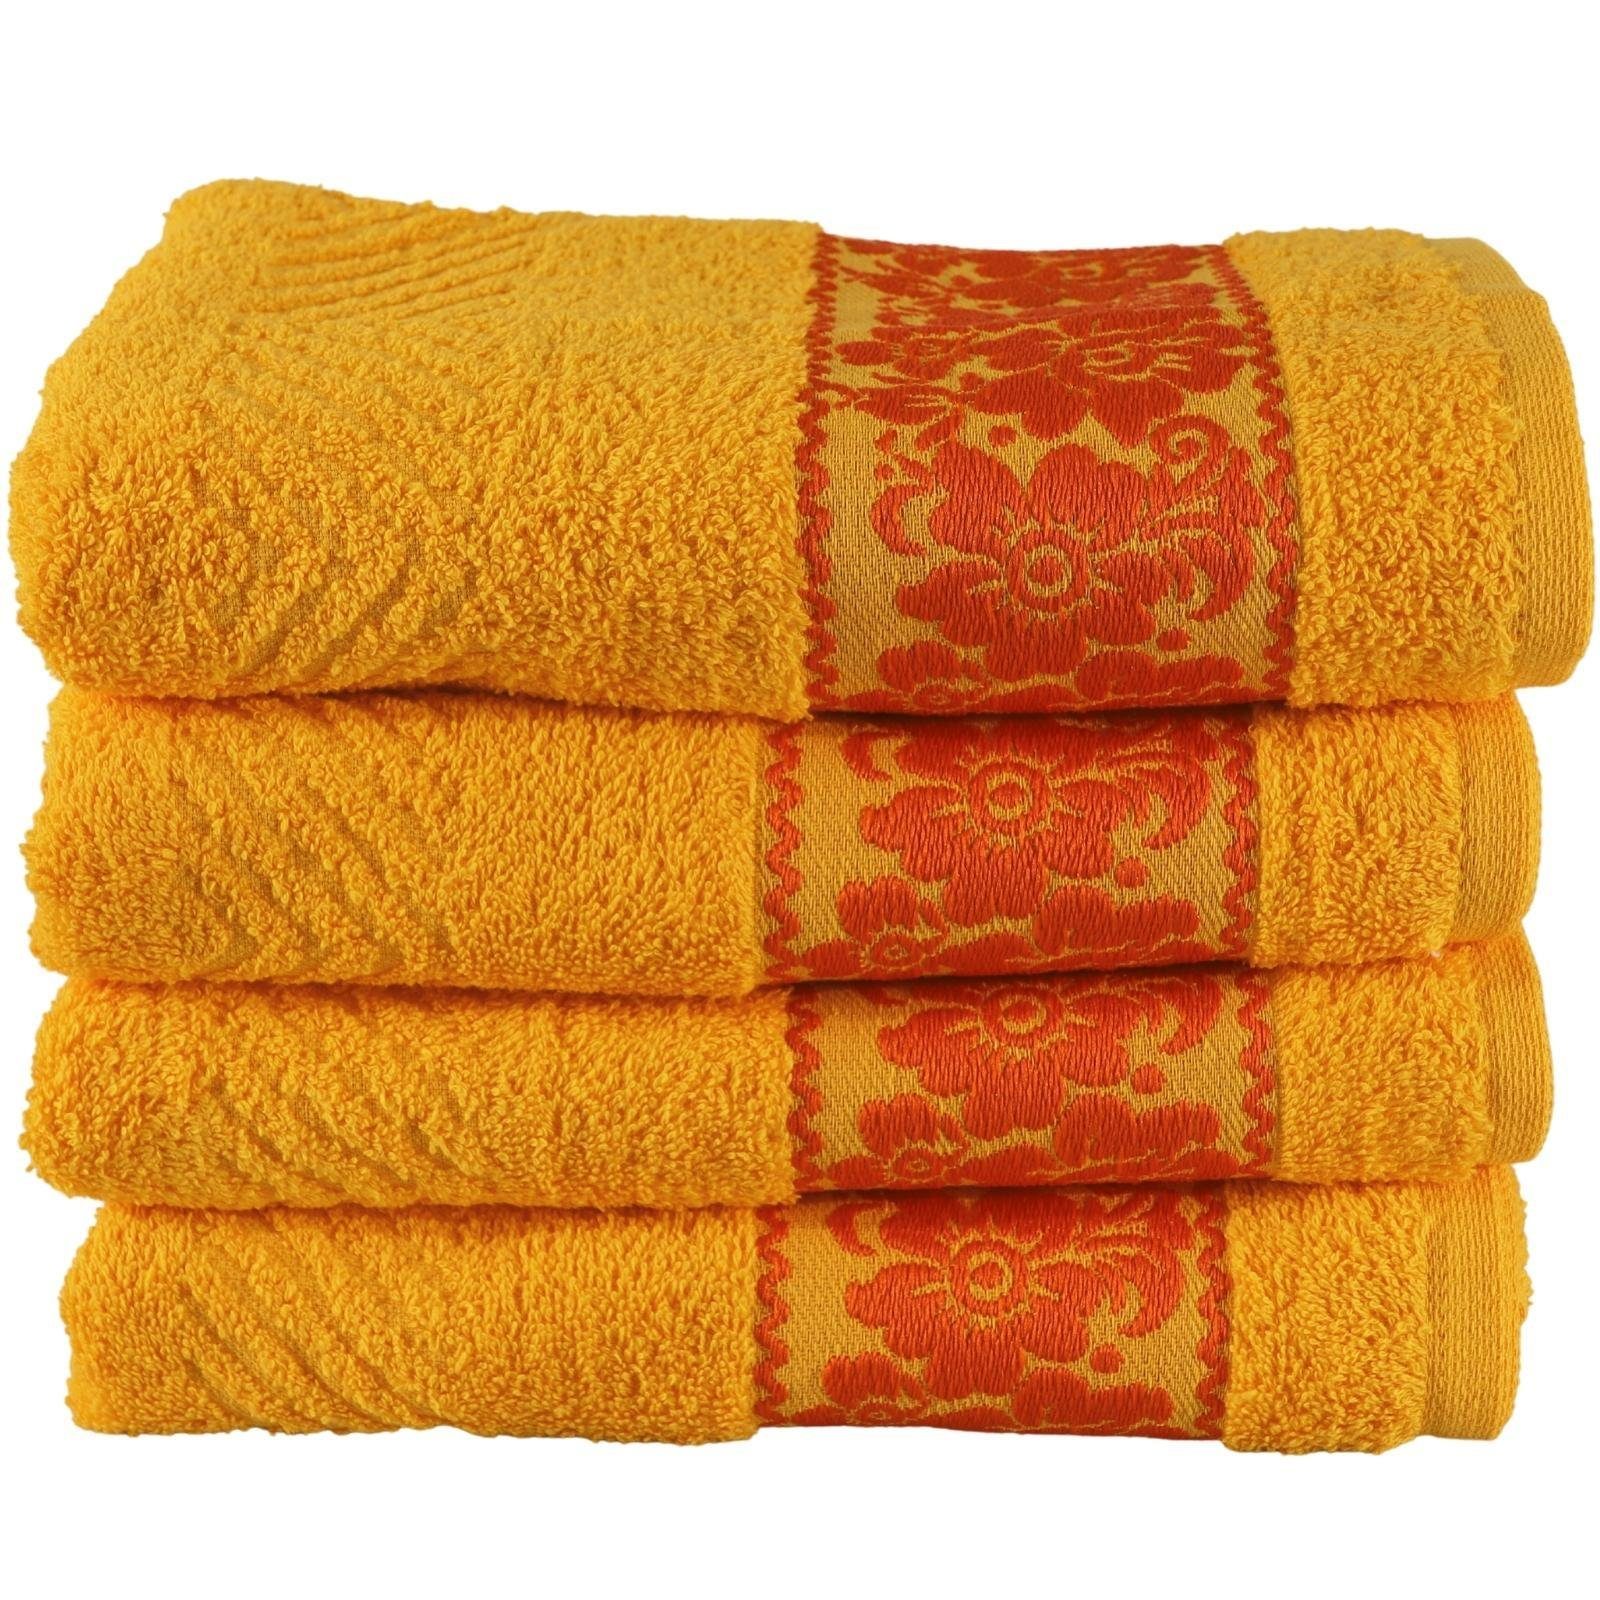 Plentyfy Handtücher Handtuch Set 4teilig aus 100% Baumwolle, 100% Baumwolle (4-St), Duschhandtuch - Frottee Handtuch Set - Badetuch